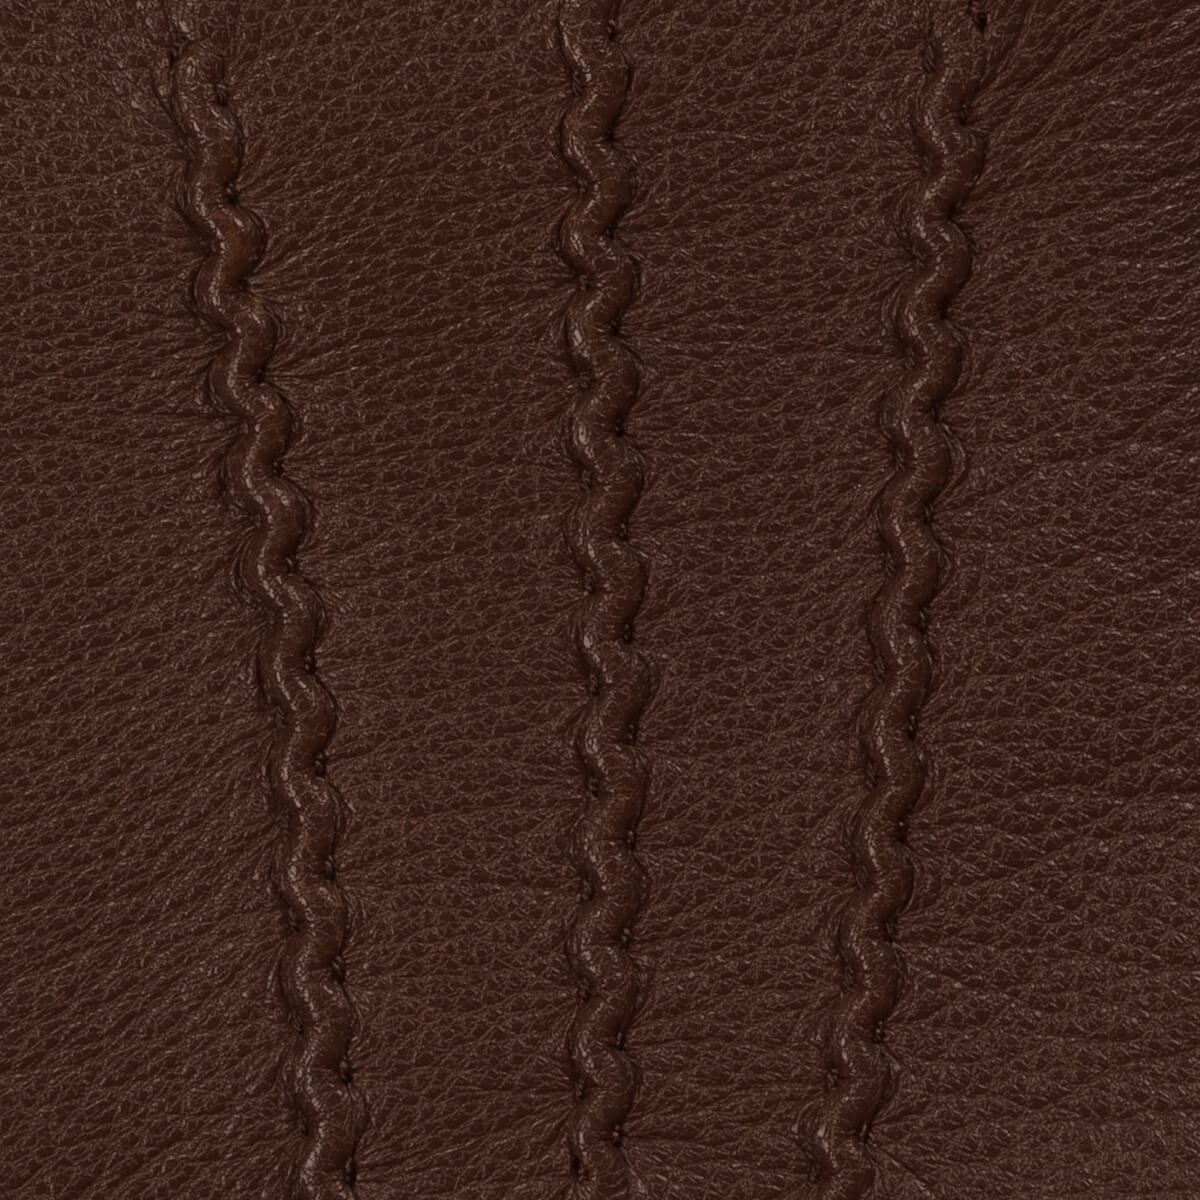 Gants en cuir marron pour femmes - écran tactile - doublés en laine d'agneau - Gants en cuir haut de gamme - Conçus à Amsterdam - Schwartz & von Halen® - 4